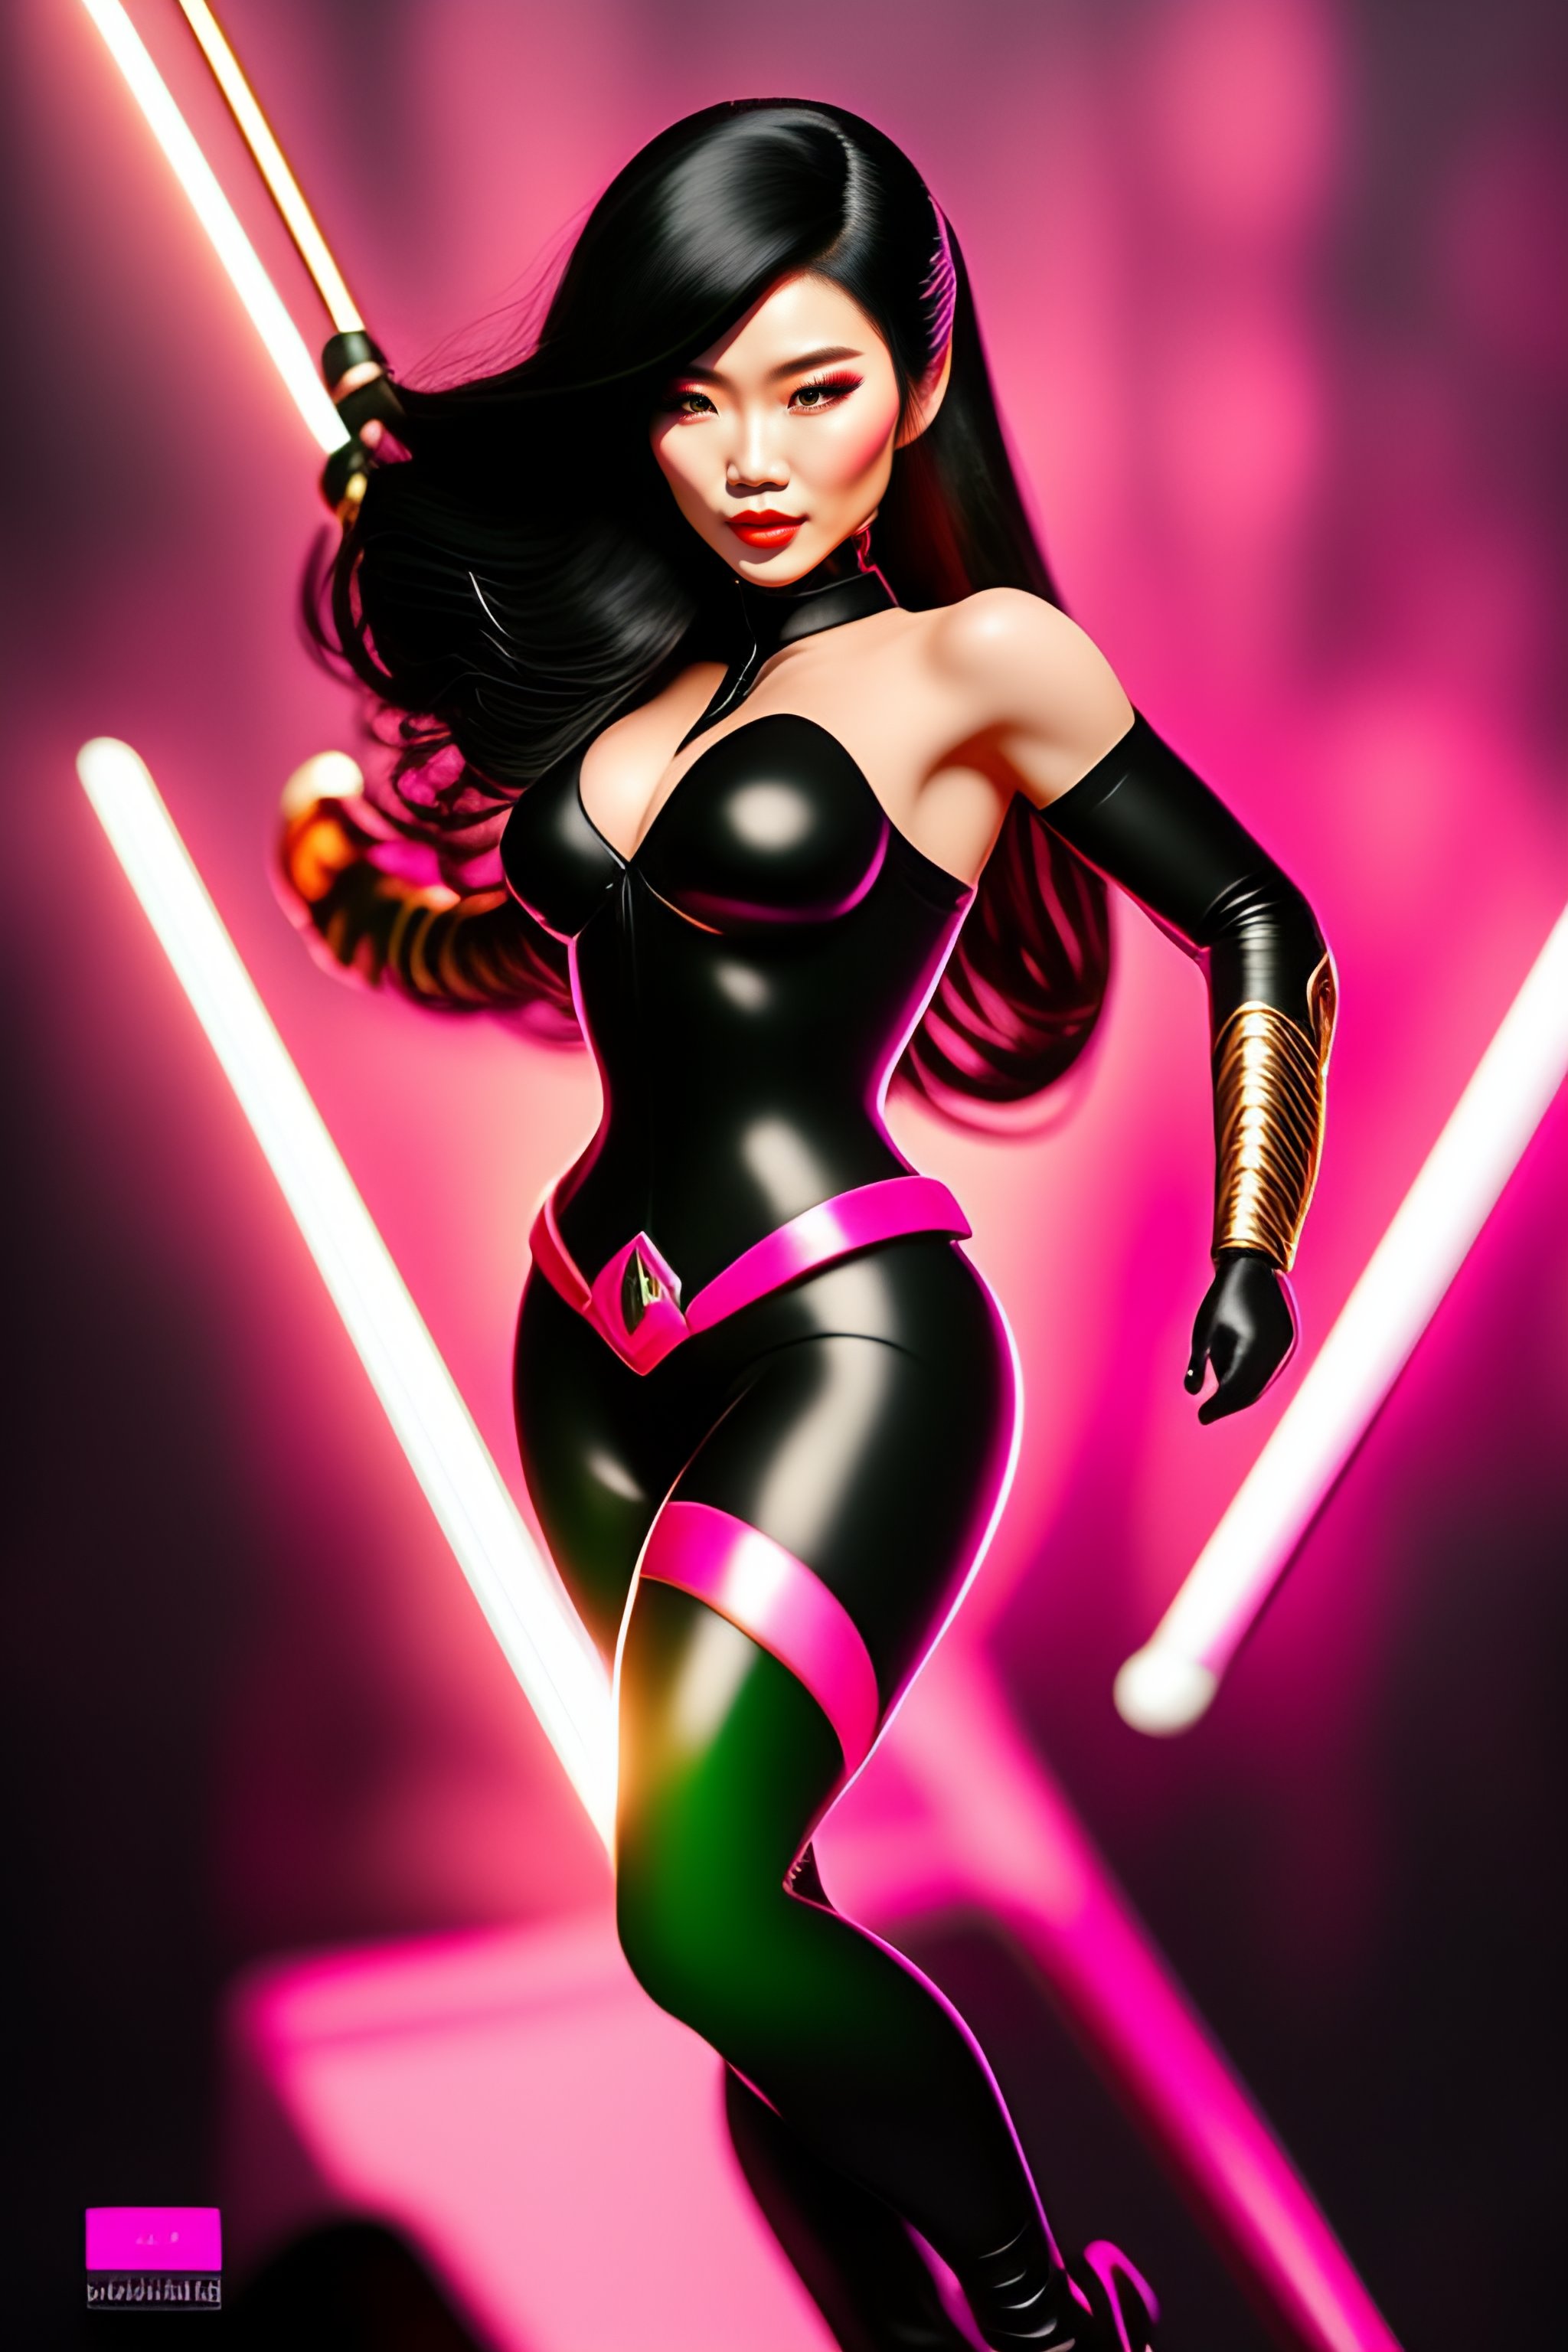 Lexica - Pretty Chinese female superhero in sleek pink coat, black